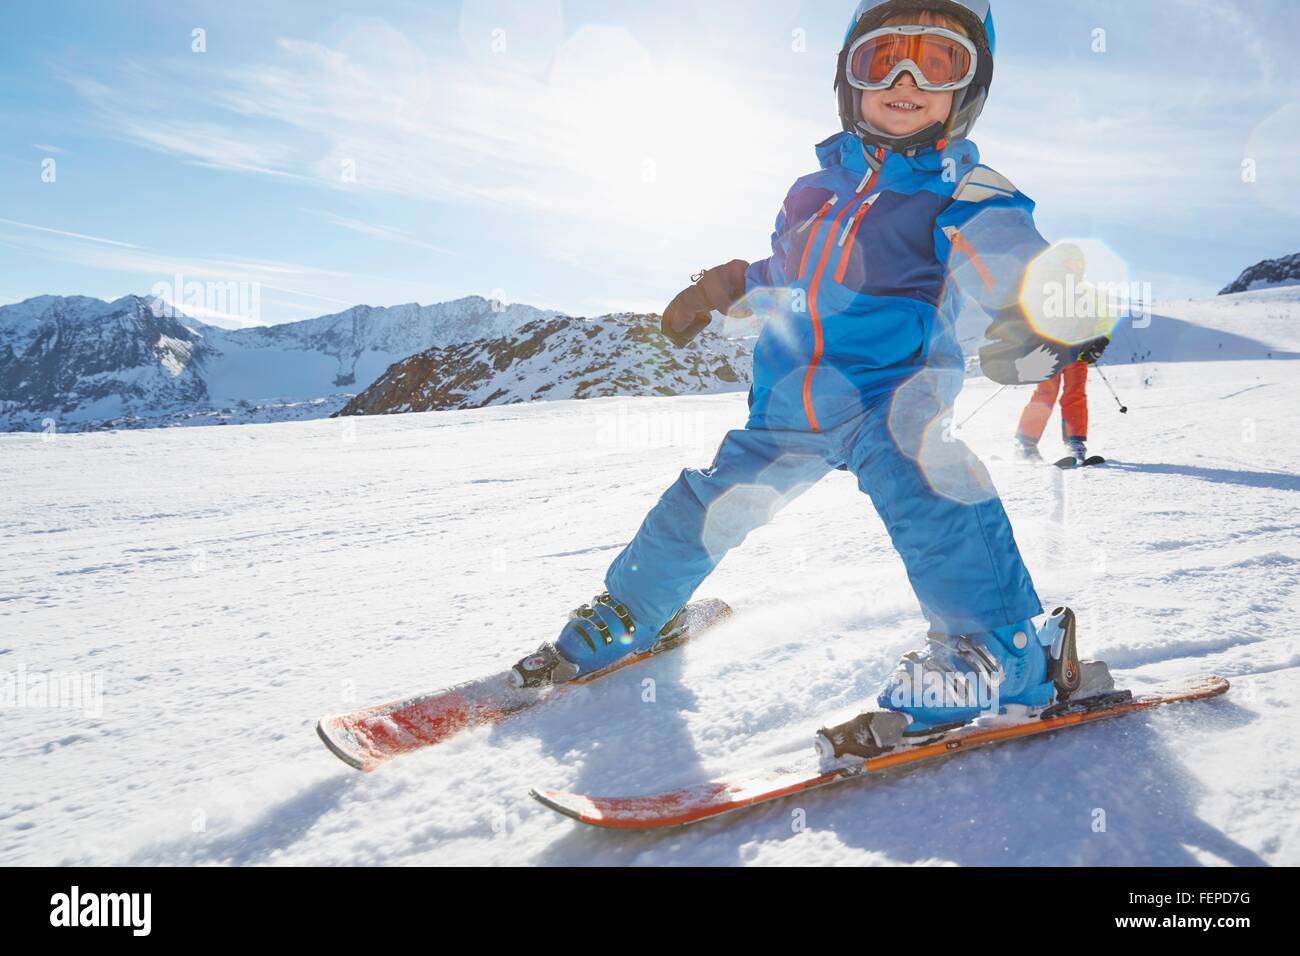 Boys skiing, Stubai, Tyrol, Austria Stock Photo